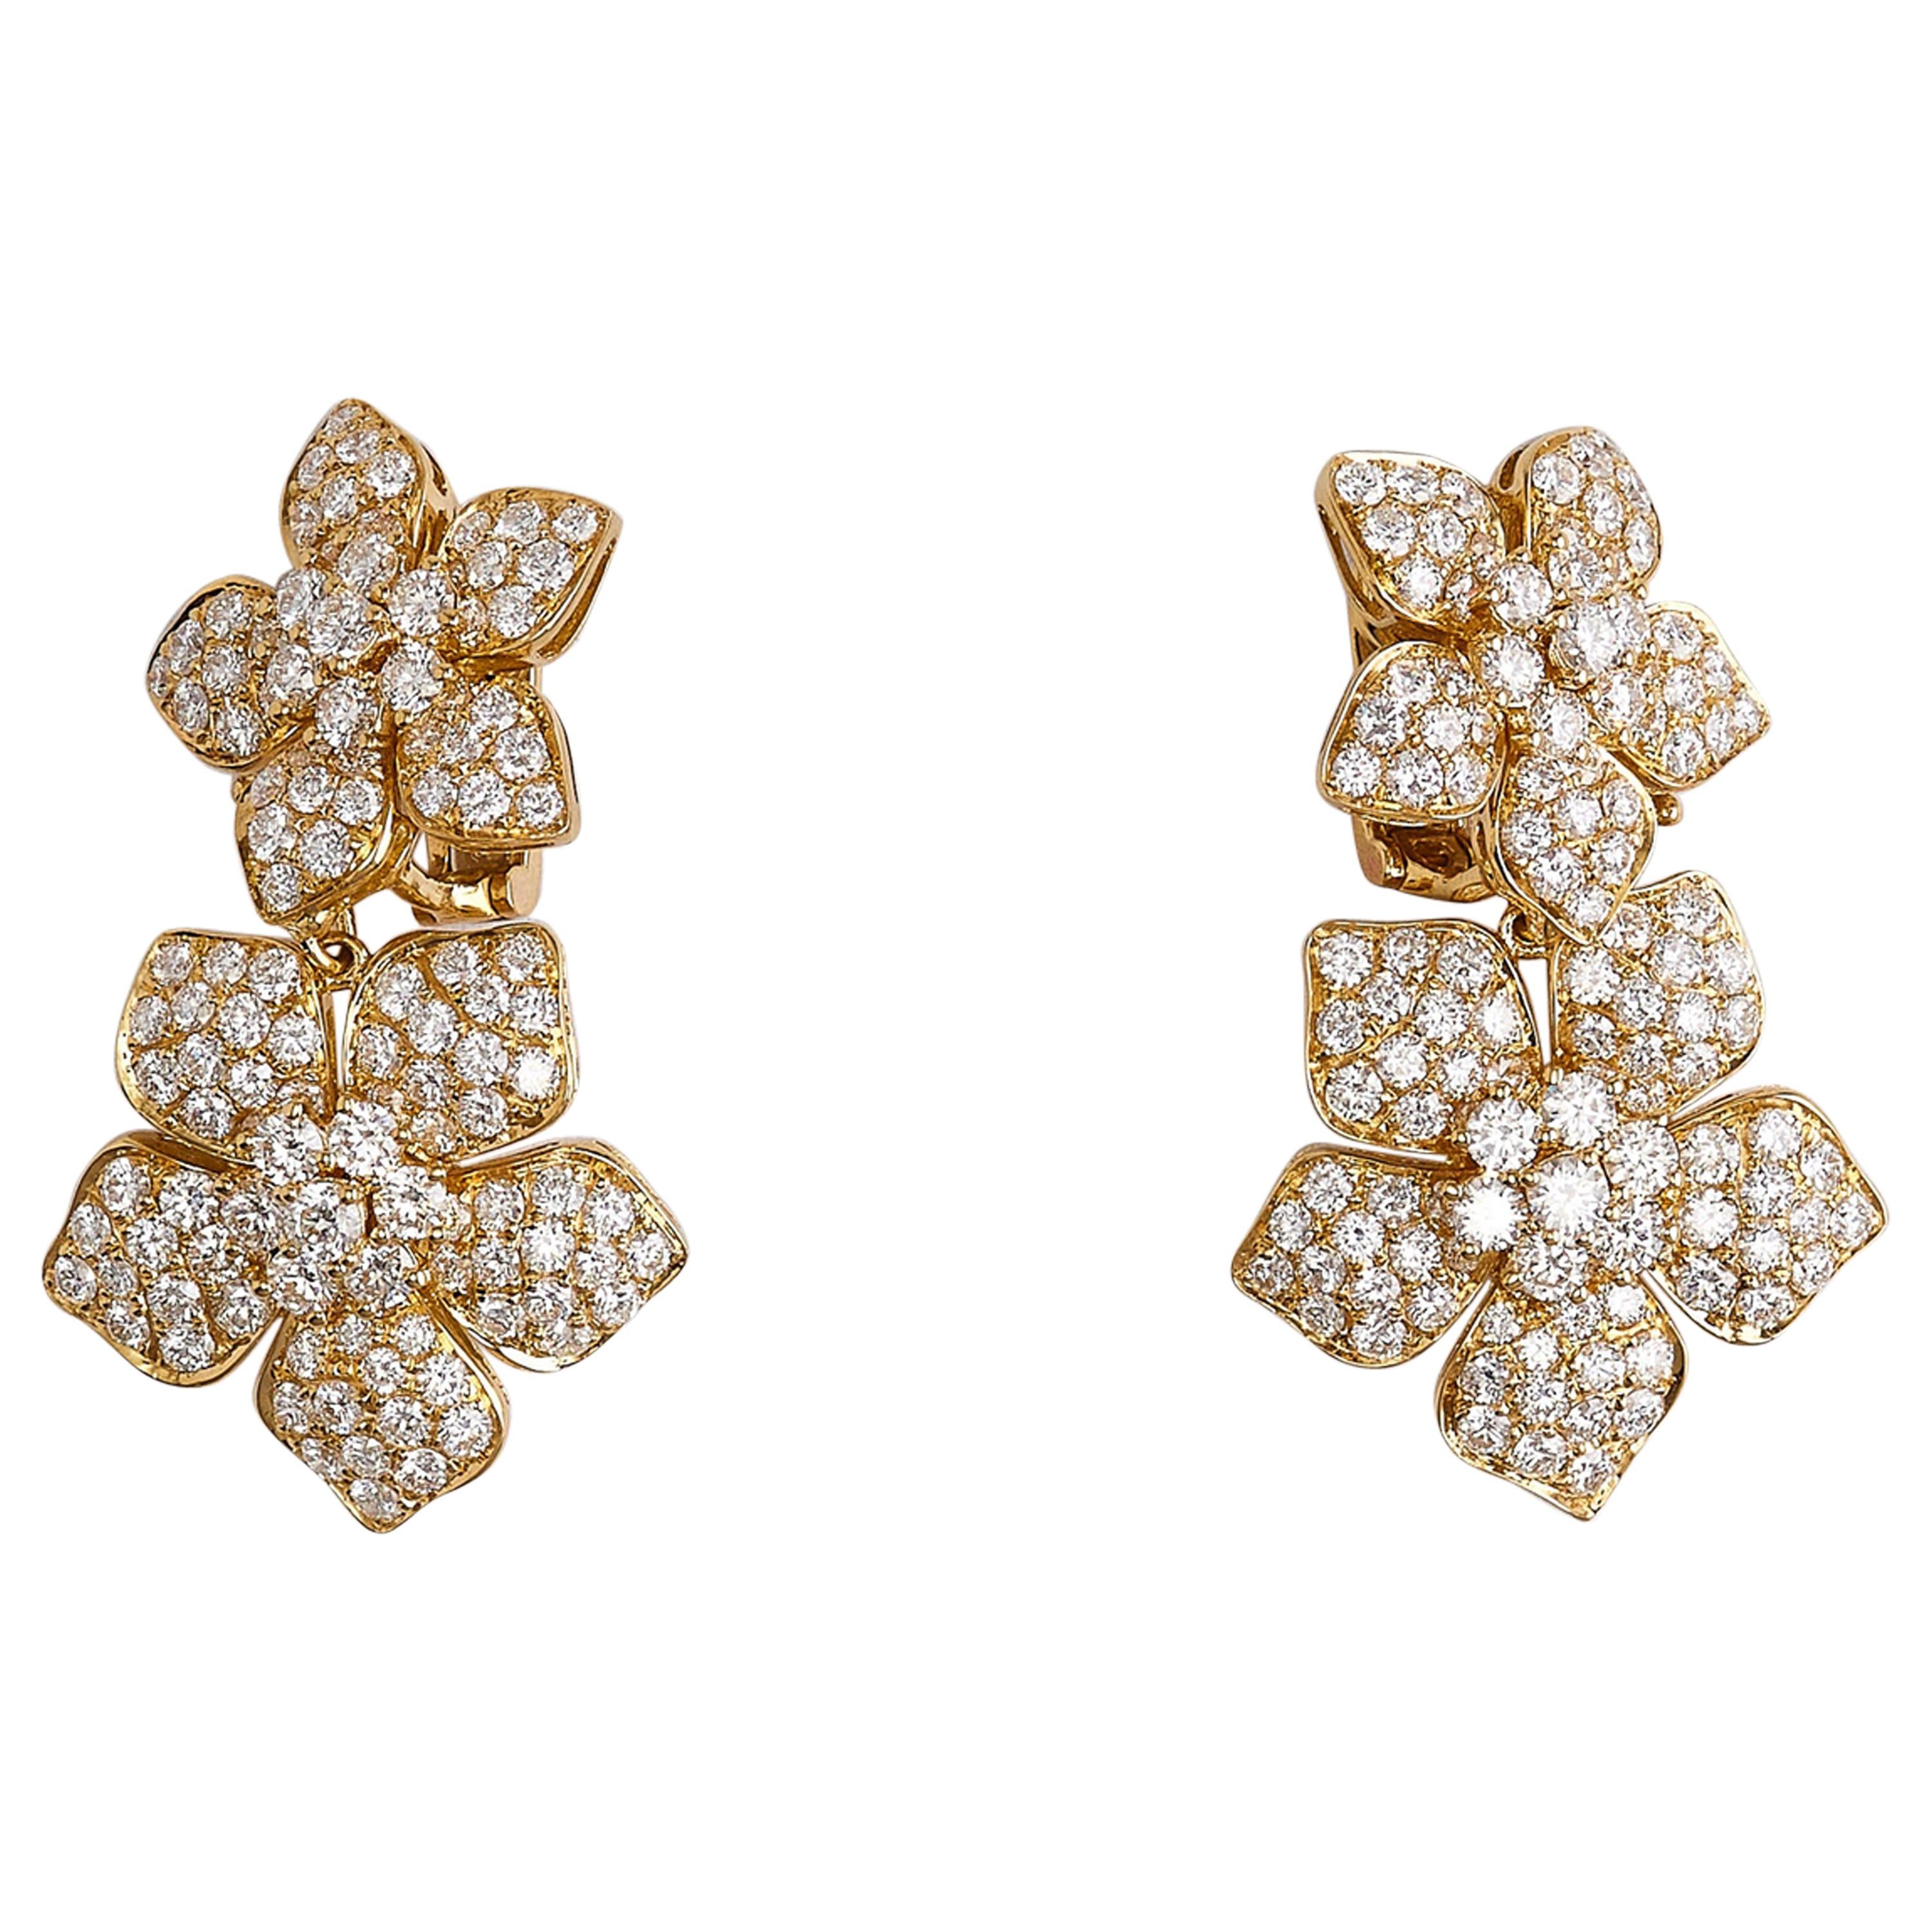 VAN CLEEF & ARPELS DIAMOND 'MAGIC ALHAMBRA' EARRINGS, | Christie's